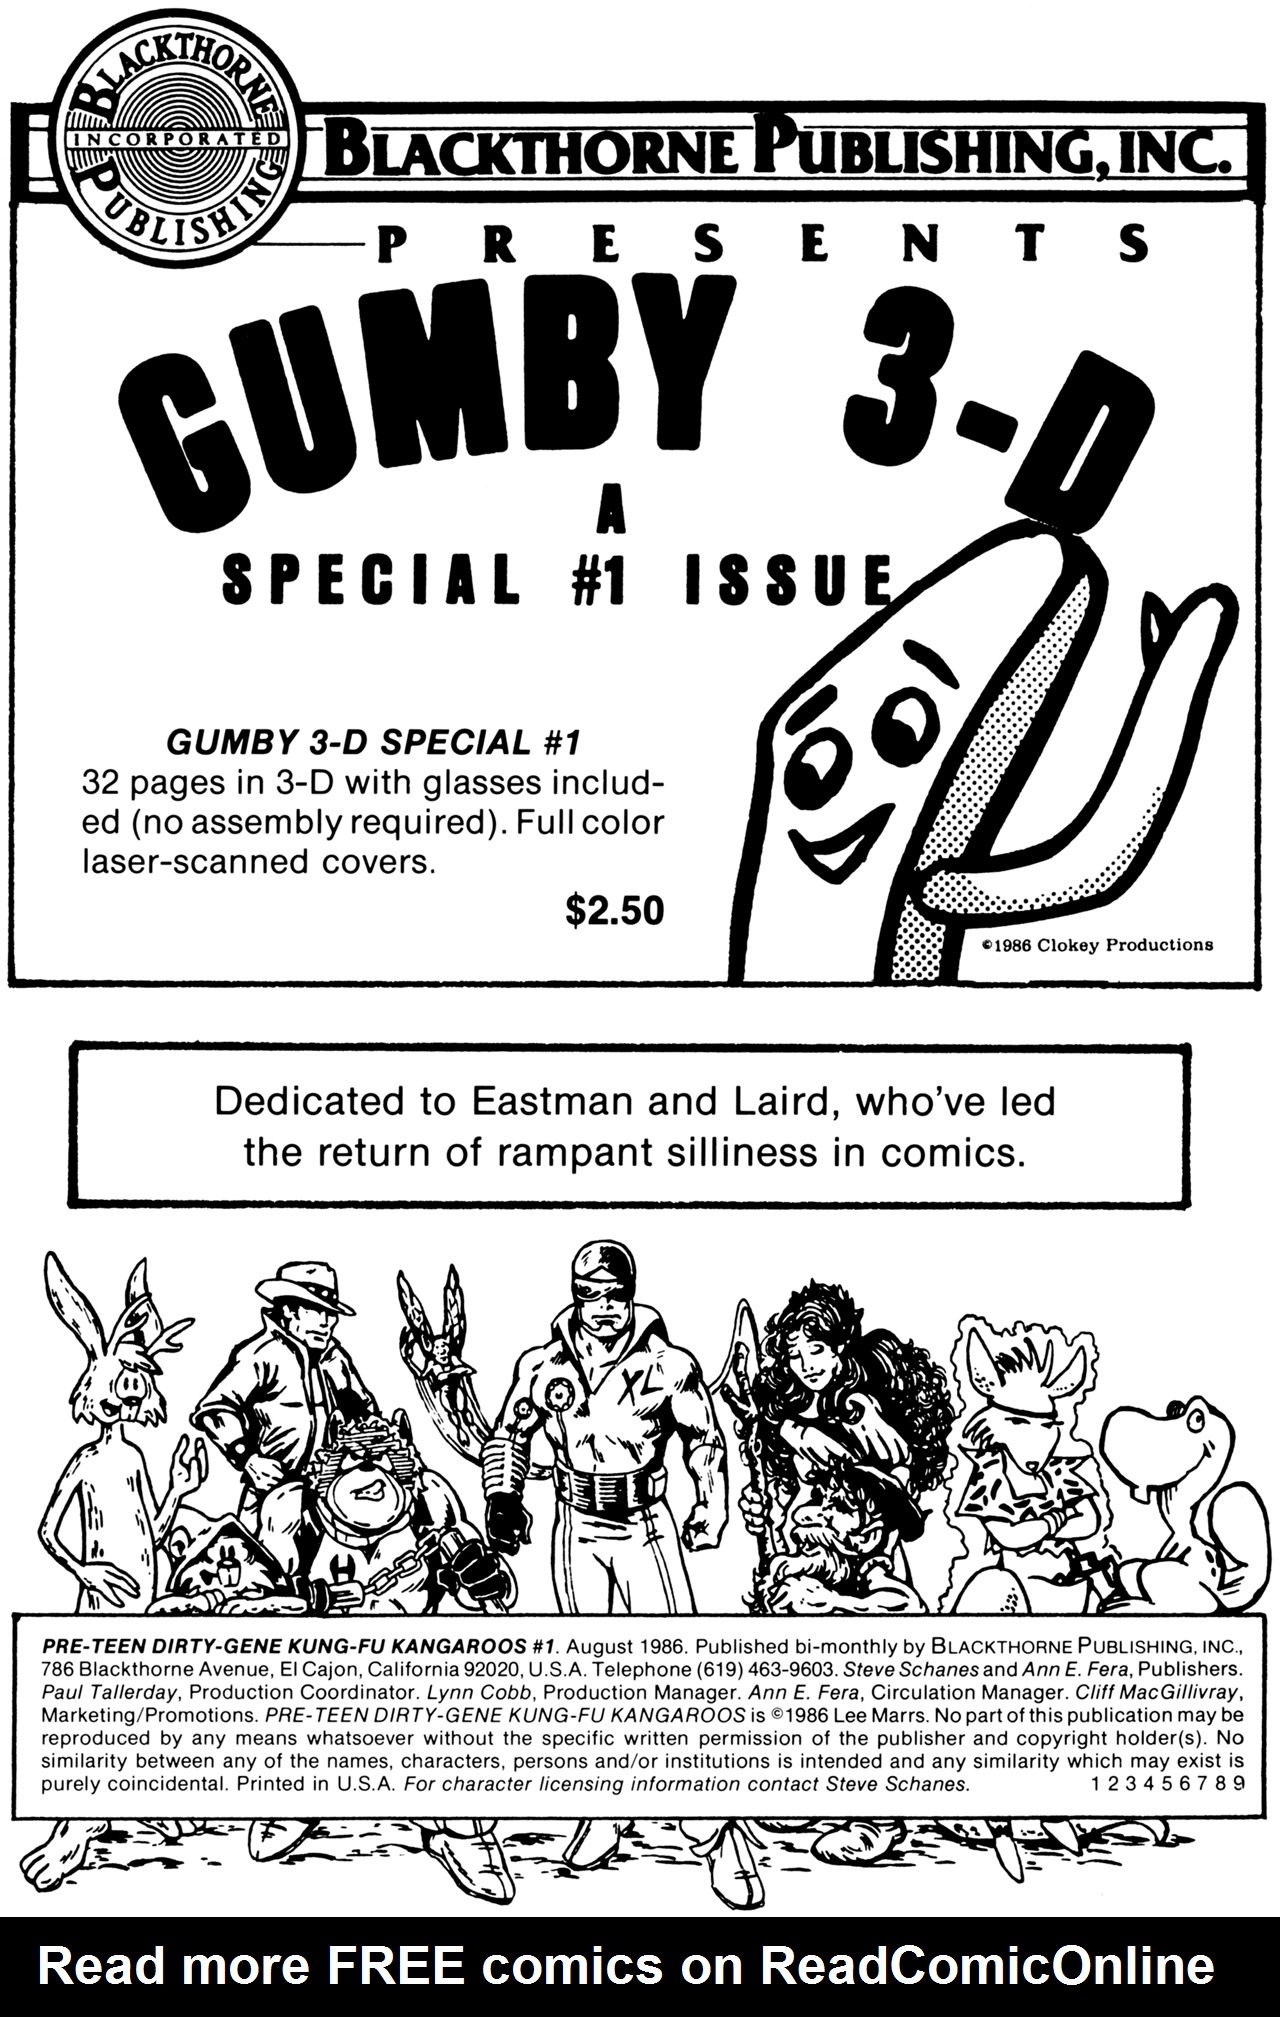 Read online Pre-Teen Dirty-Gene Kung-Fu Kangaroos comic -  Issue #1 - 2